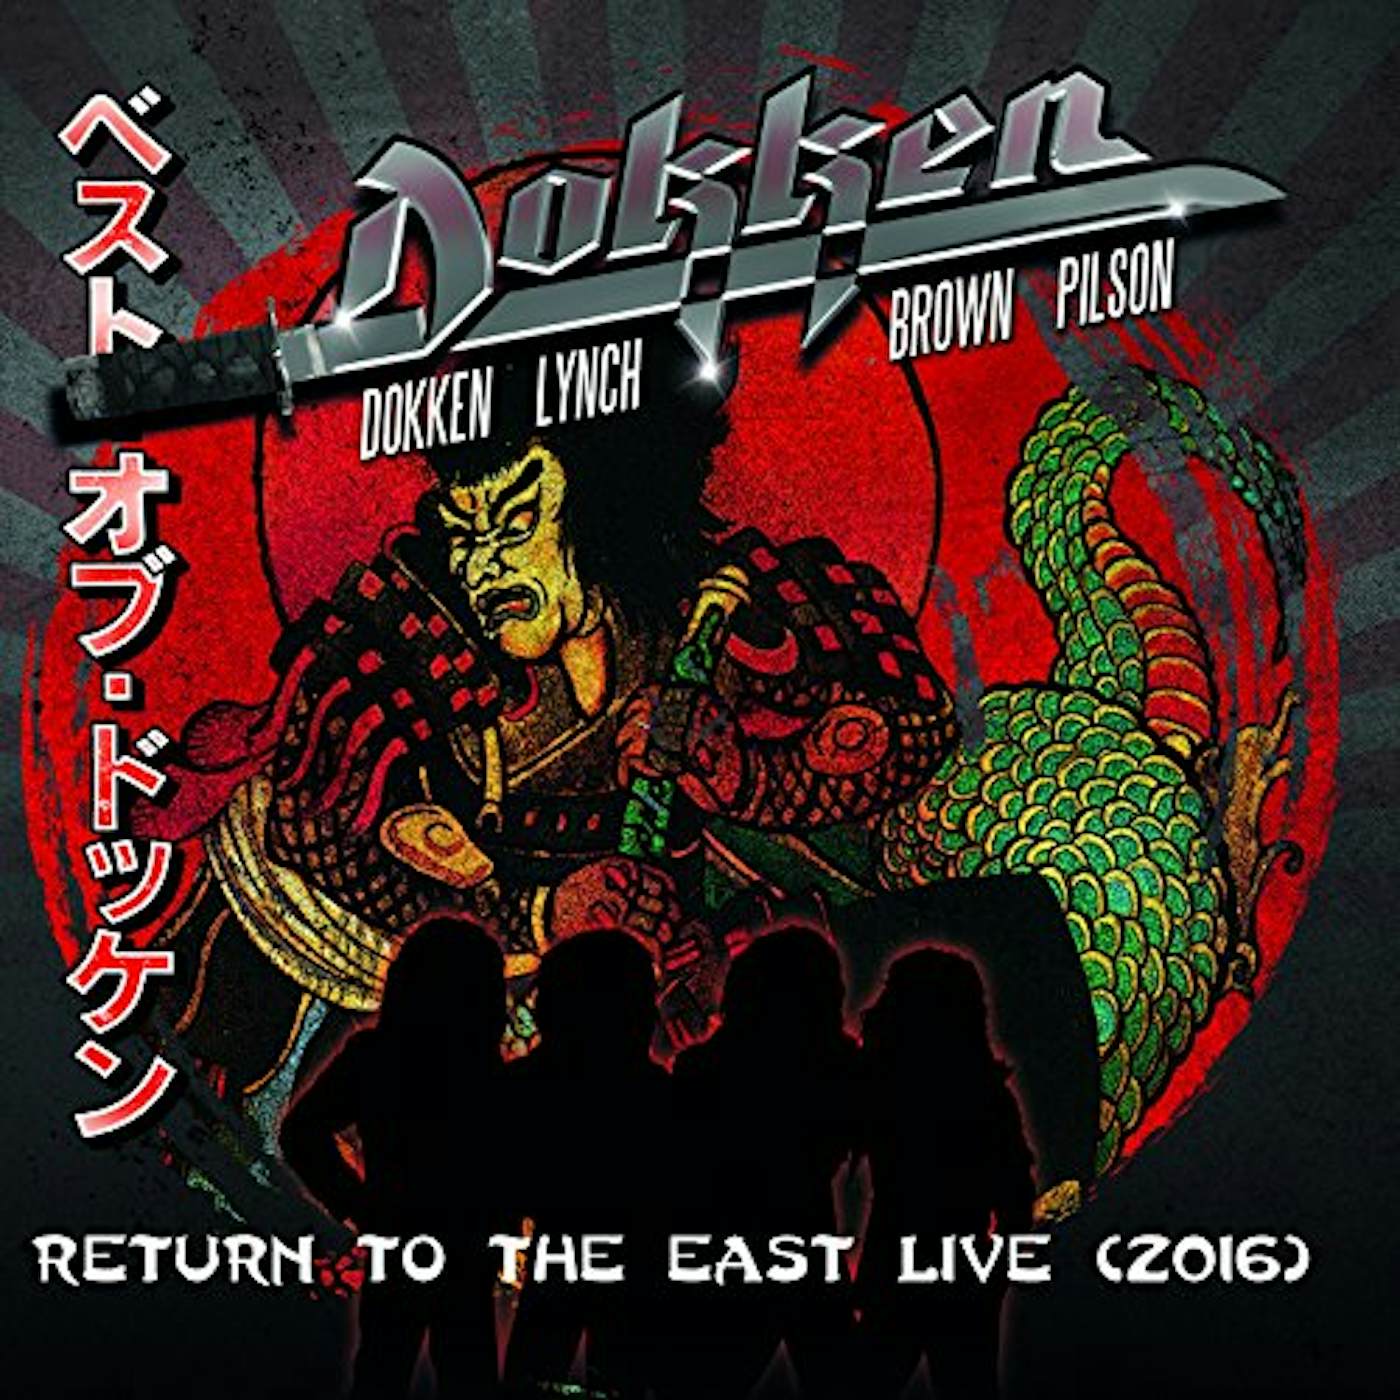 Dokken RETURN TO THE EAST LIVE 2016 CD